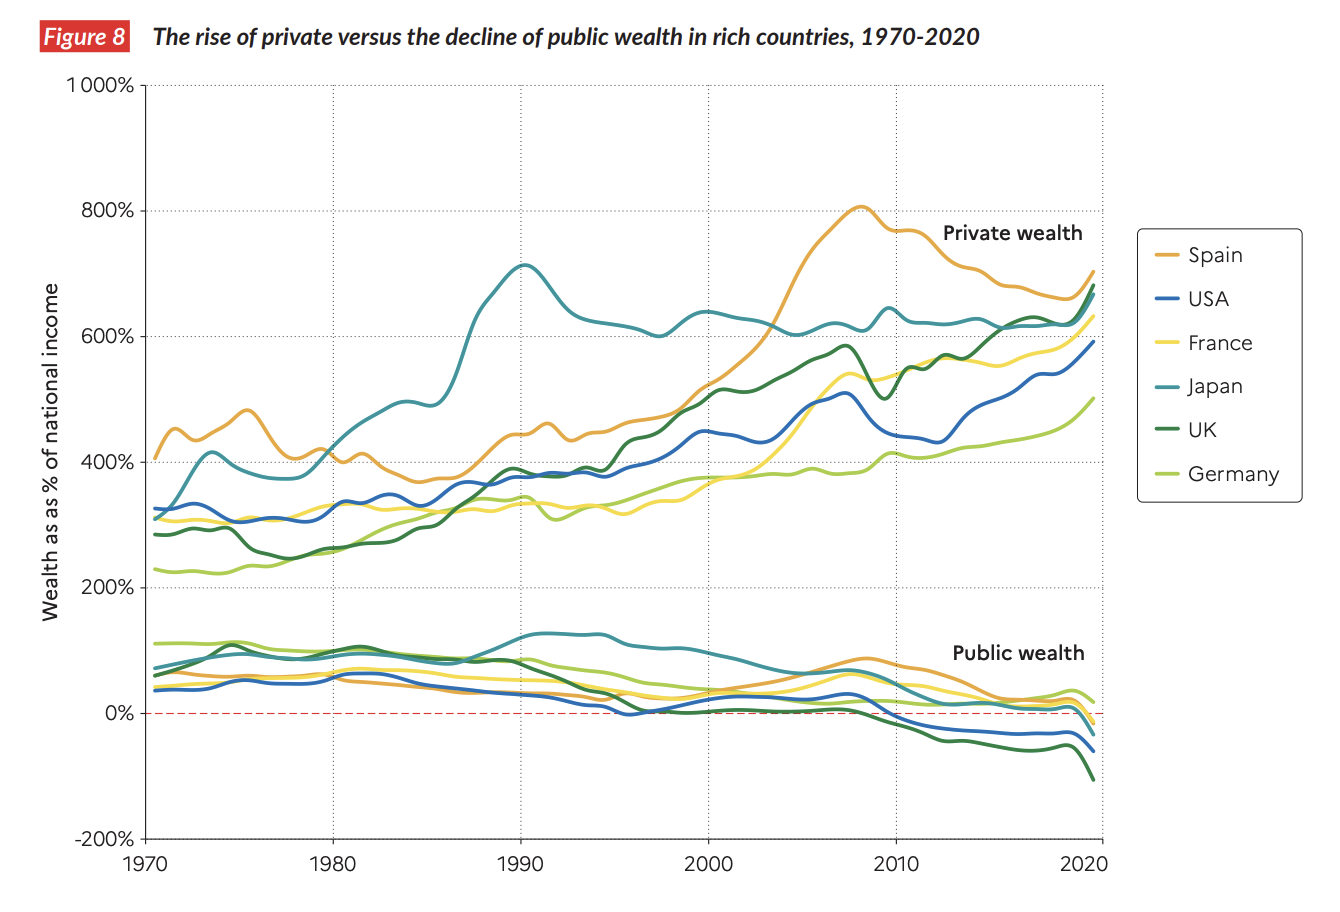 Gráfico: El aumento de la riqueza privada frente al descenso de la pública en los países ricos, 1970-2020